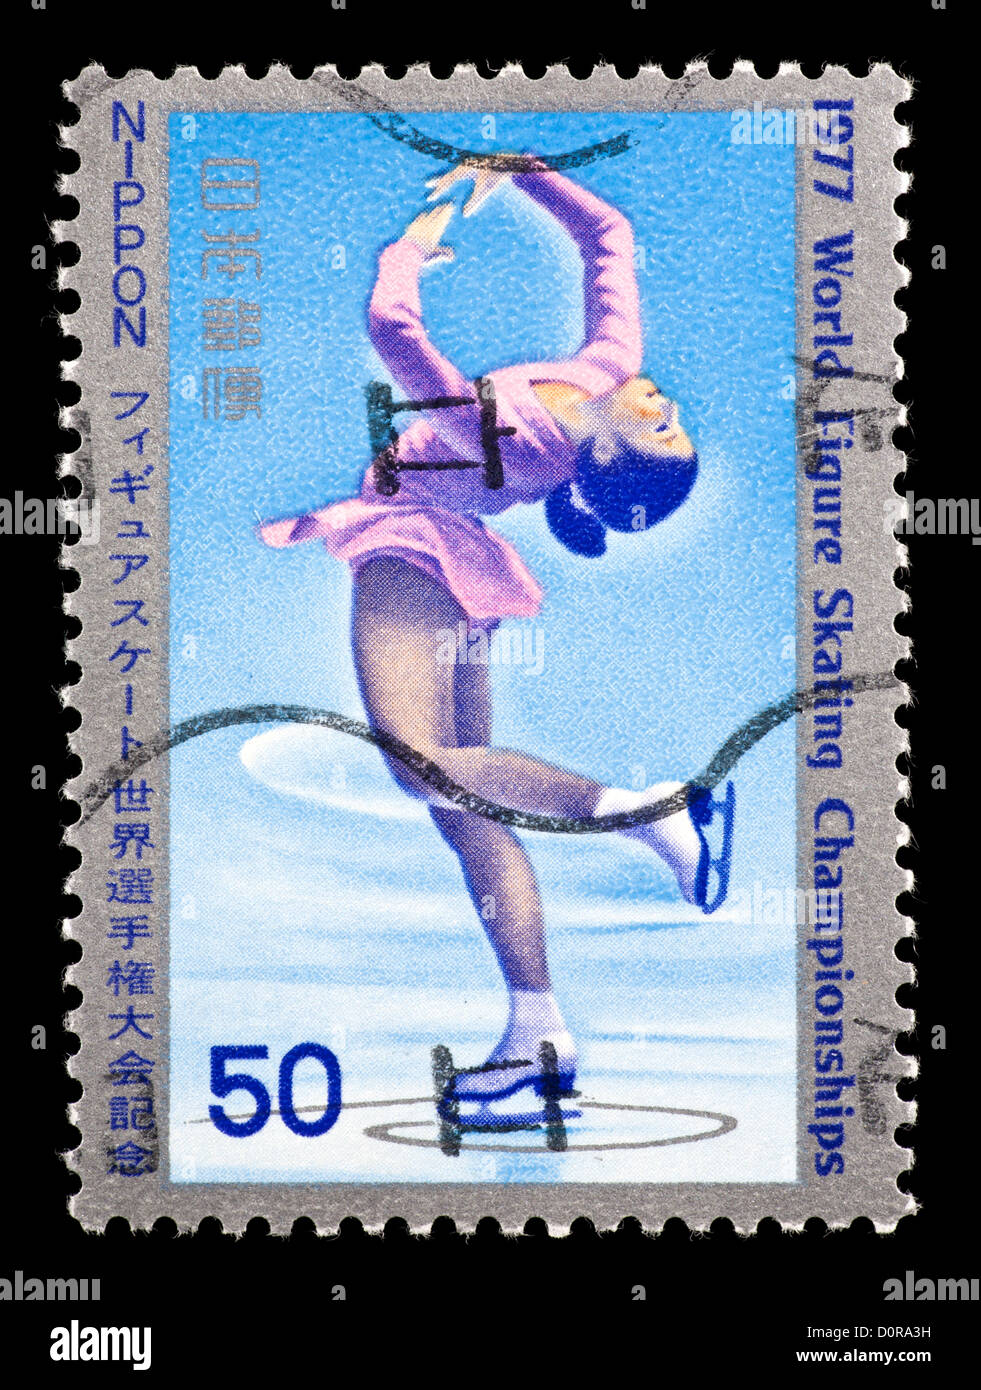 Francobollo dal Giappone raffigurante una figura skater, per il 1977 World Figure Skating Championships a Tokyo in Giappone. Foto Stock